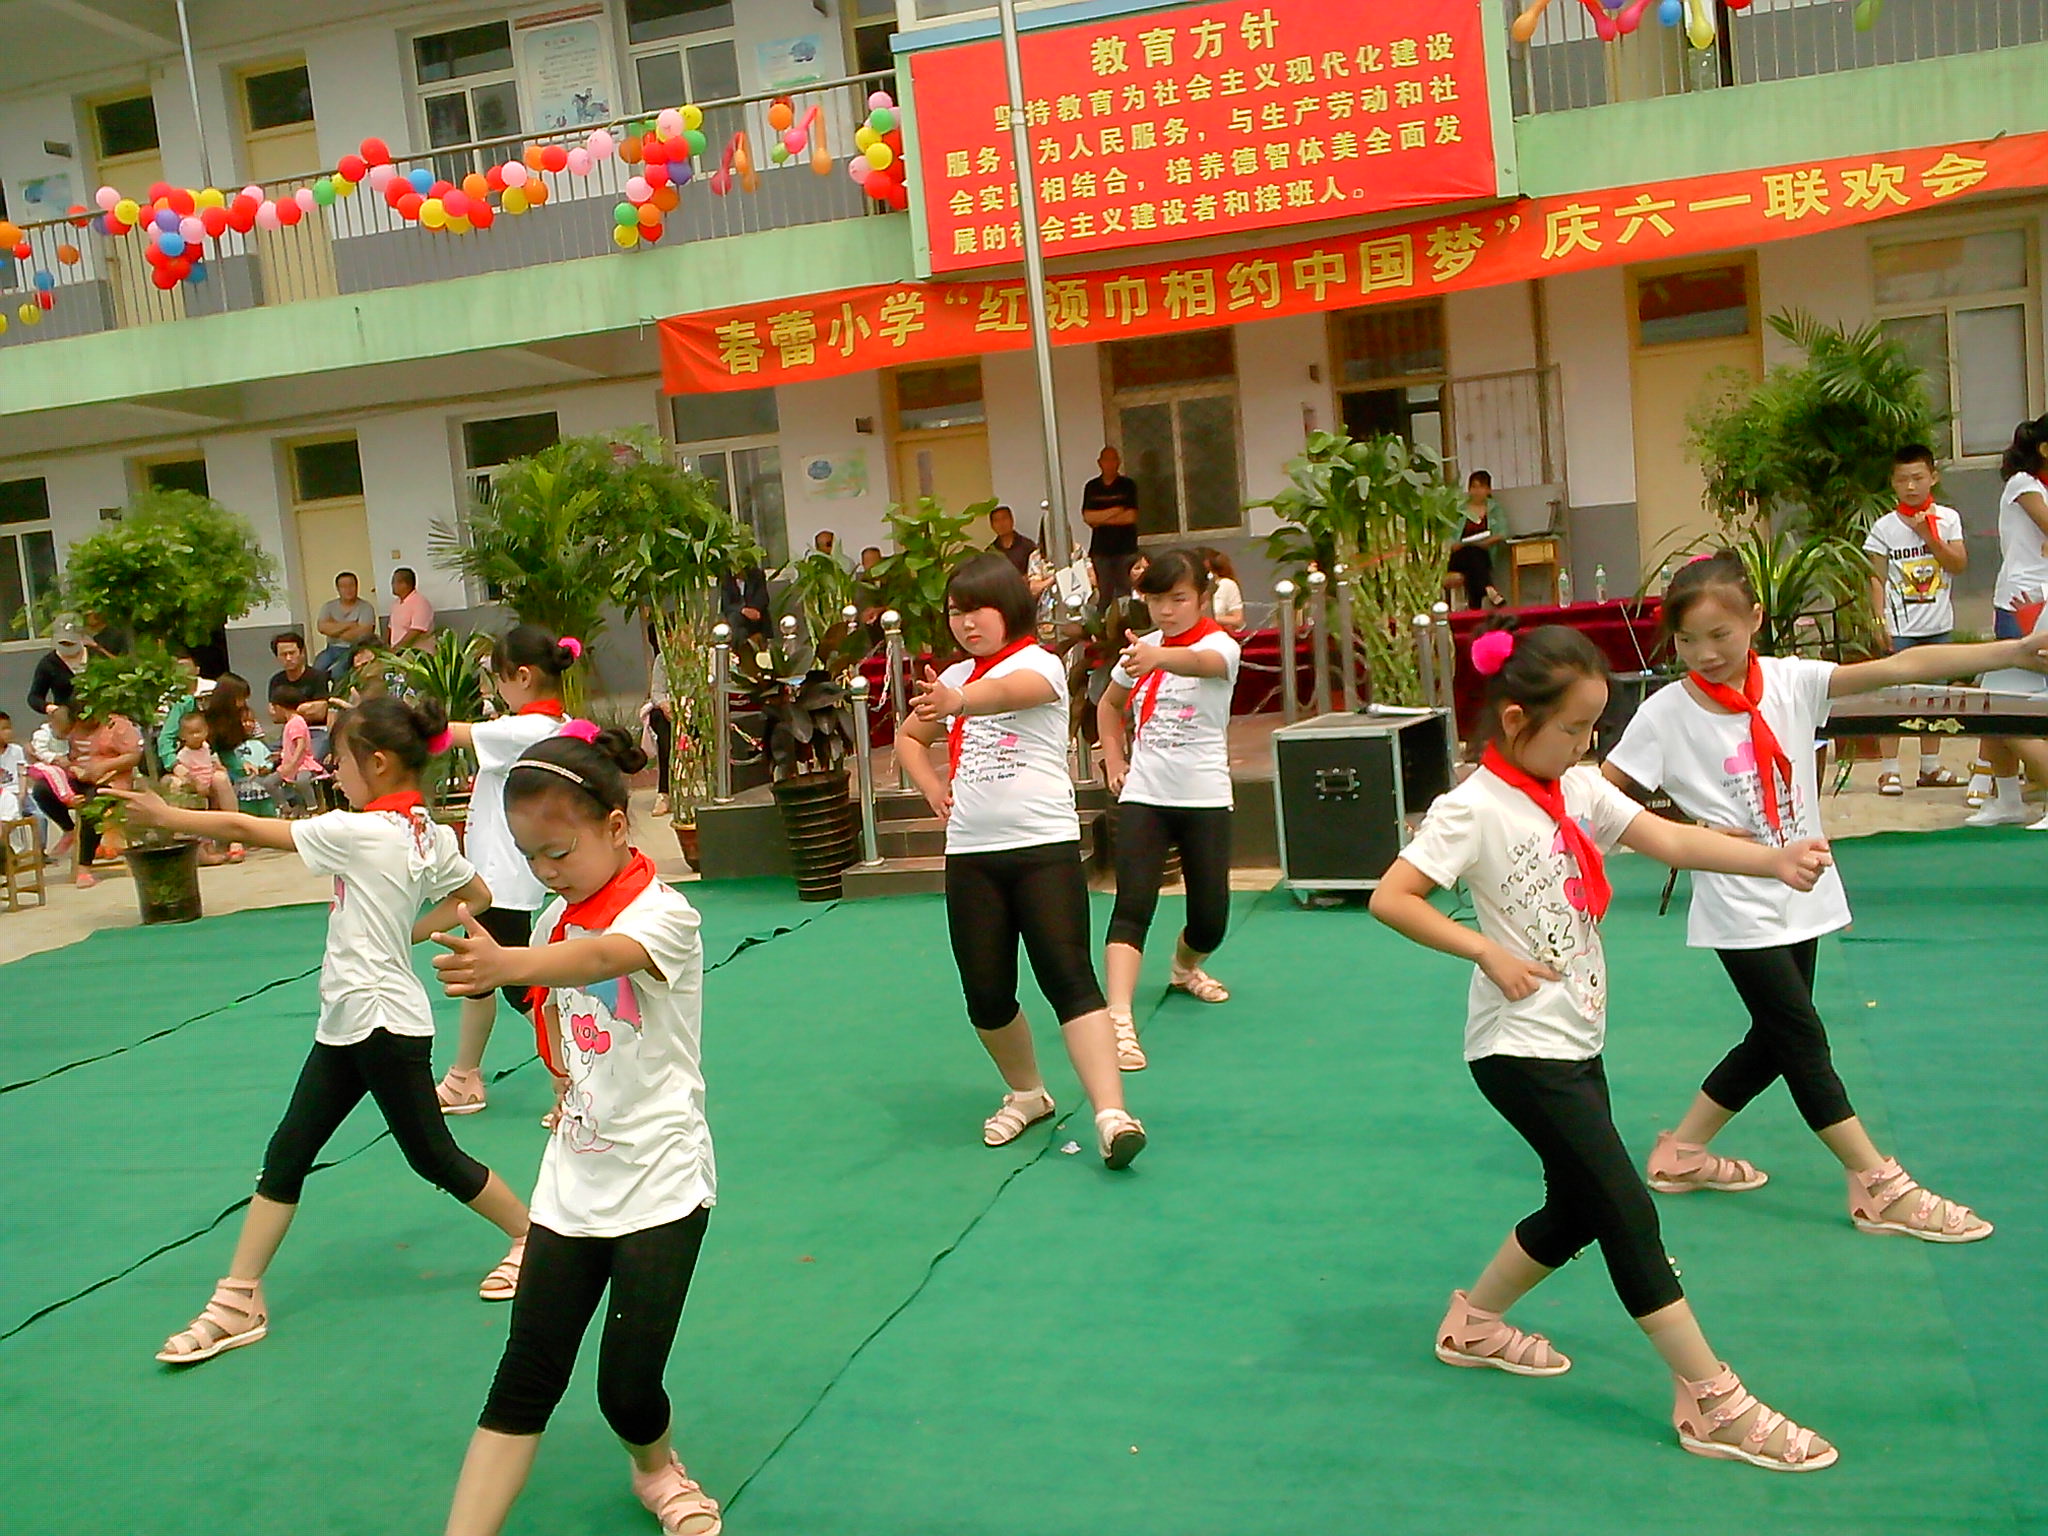 红领巾相约中国梦 庆六一活动 - 动态上传 - 活动